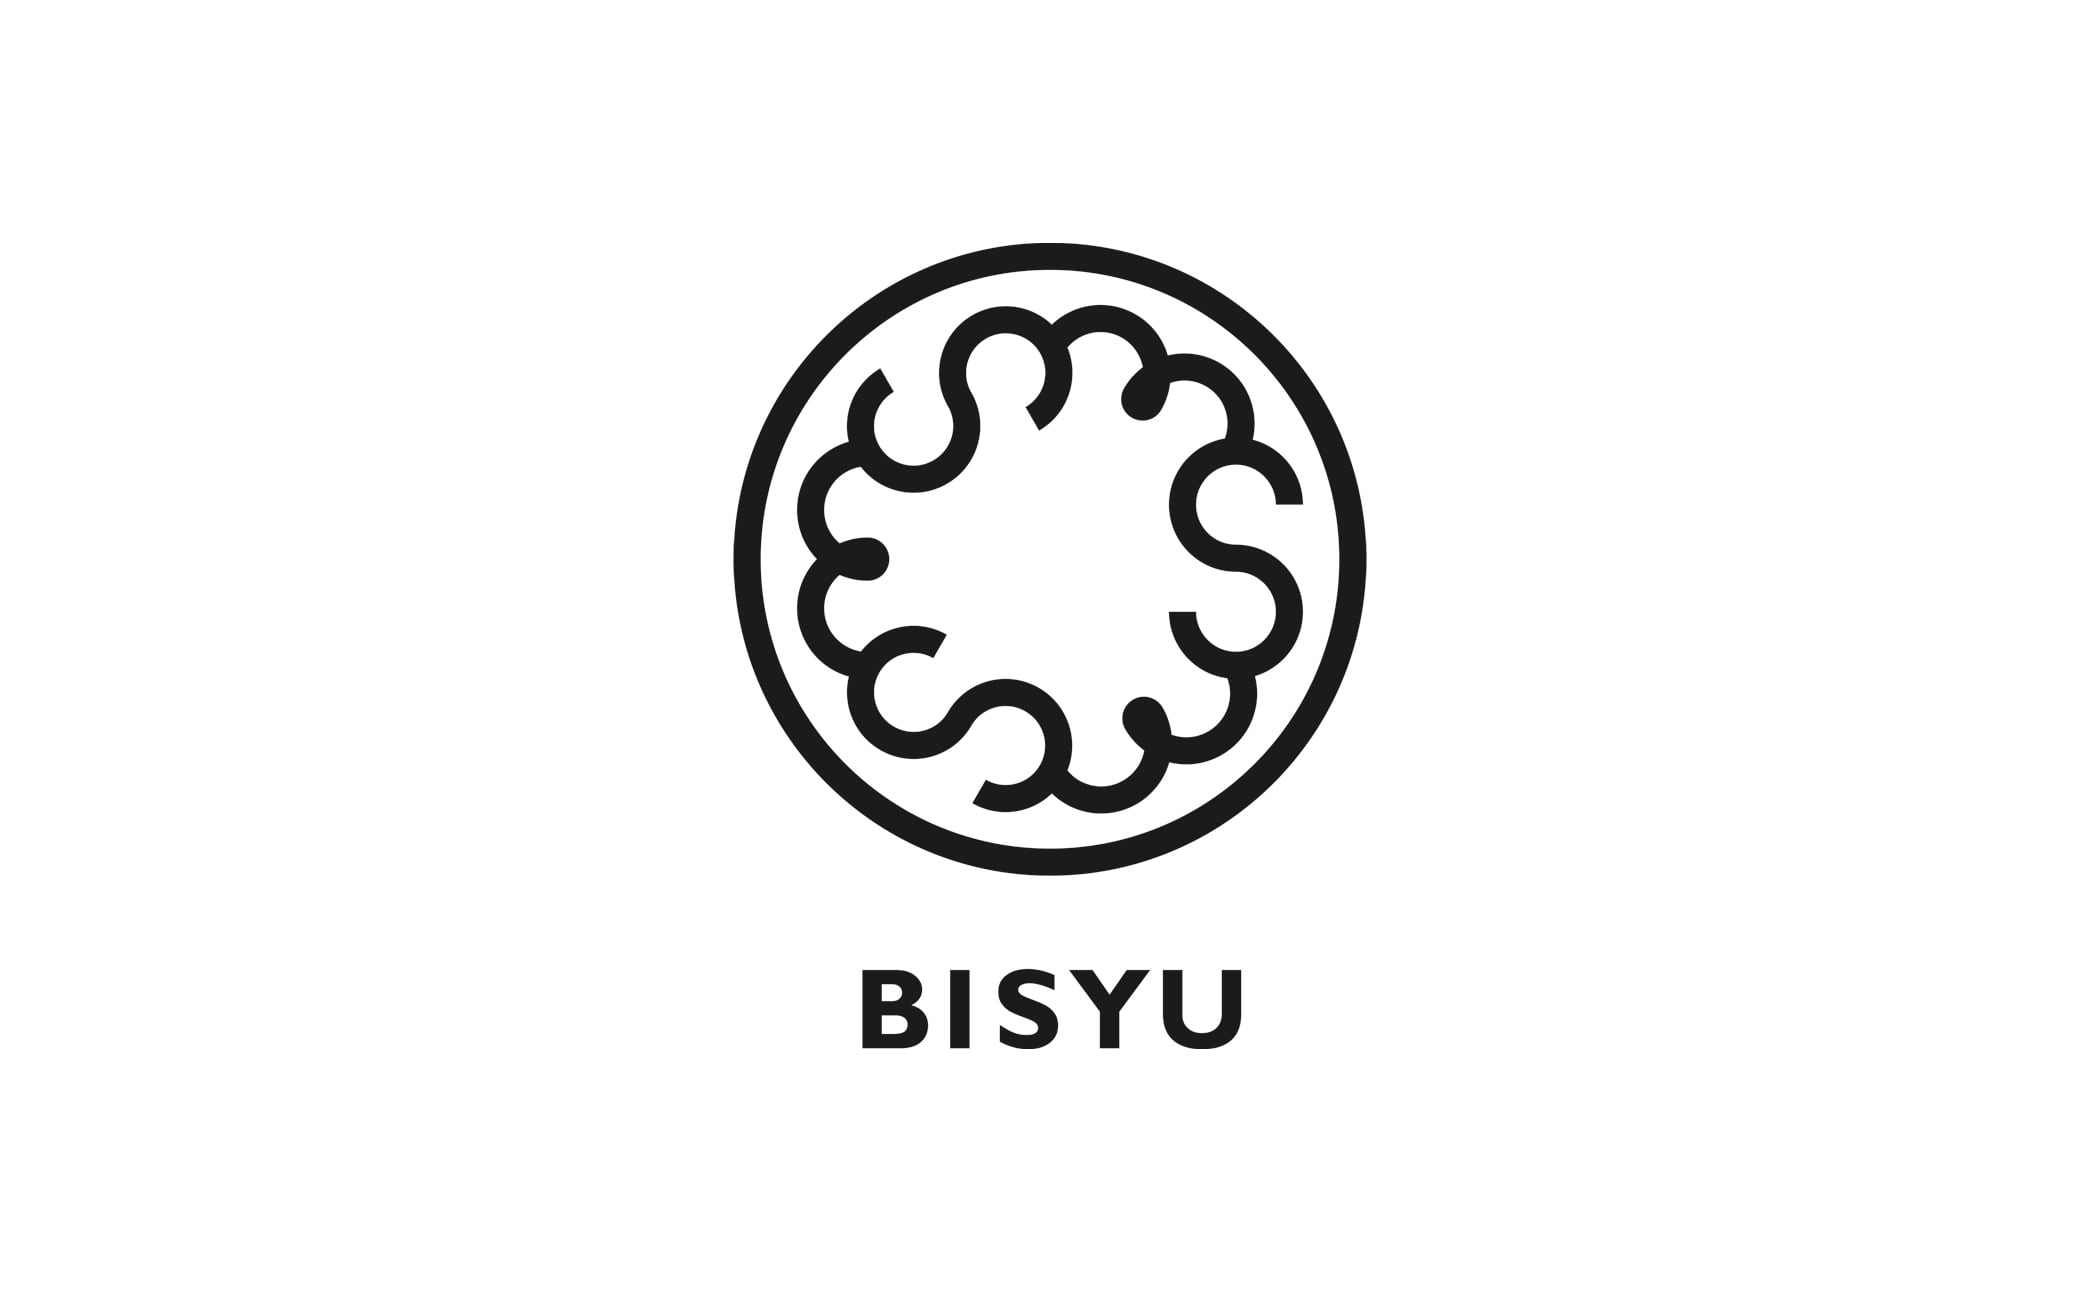 Bisyu's